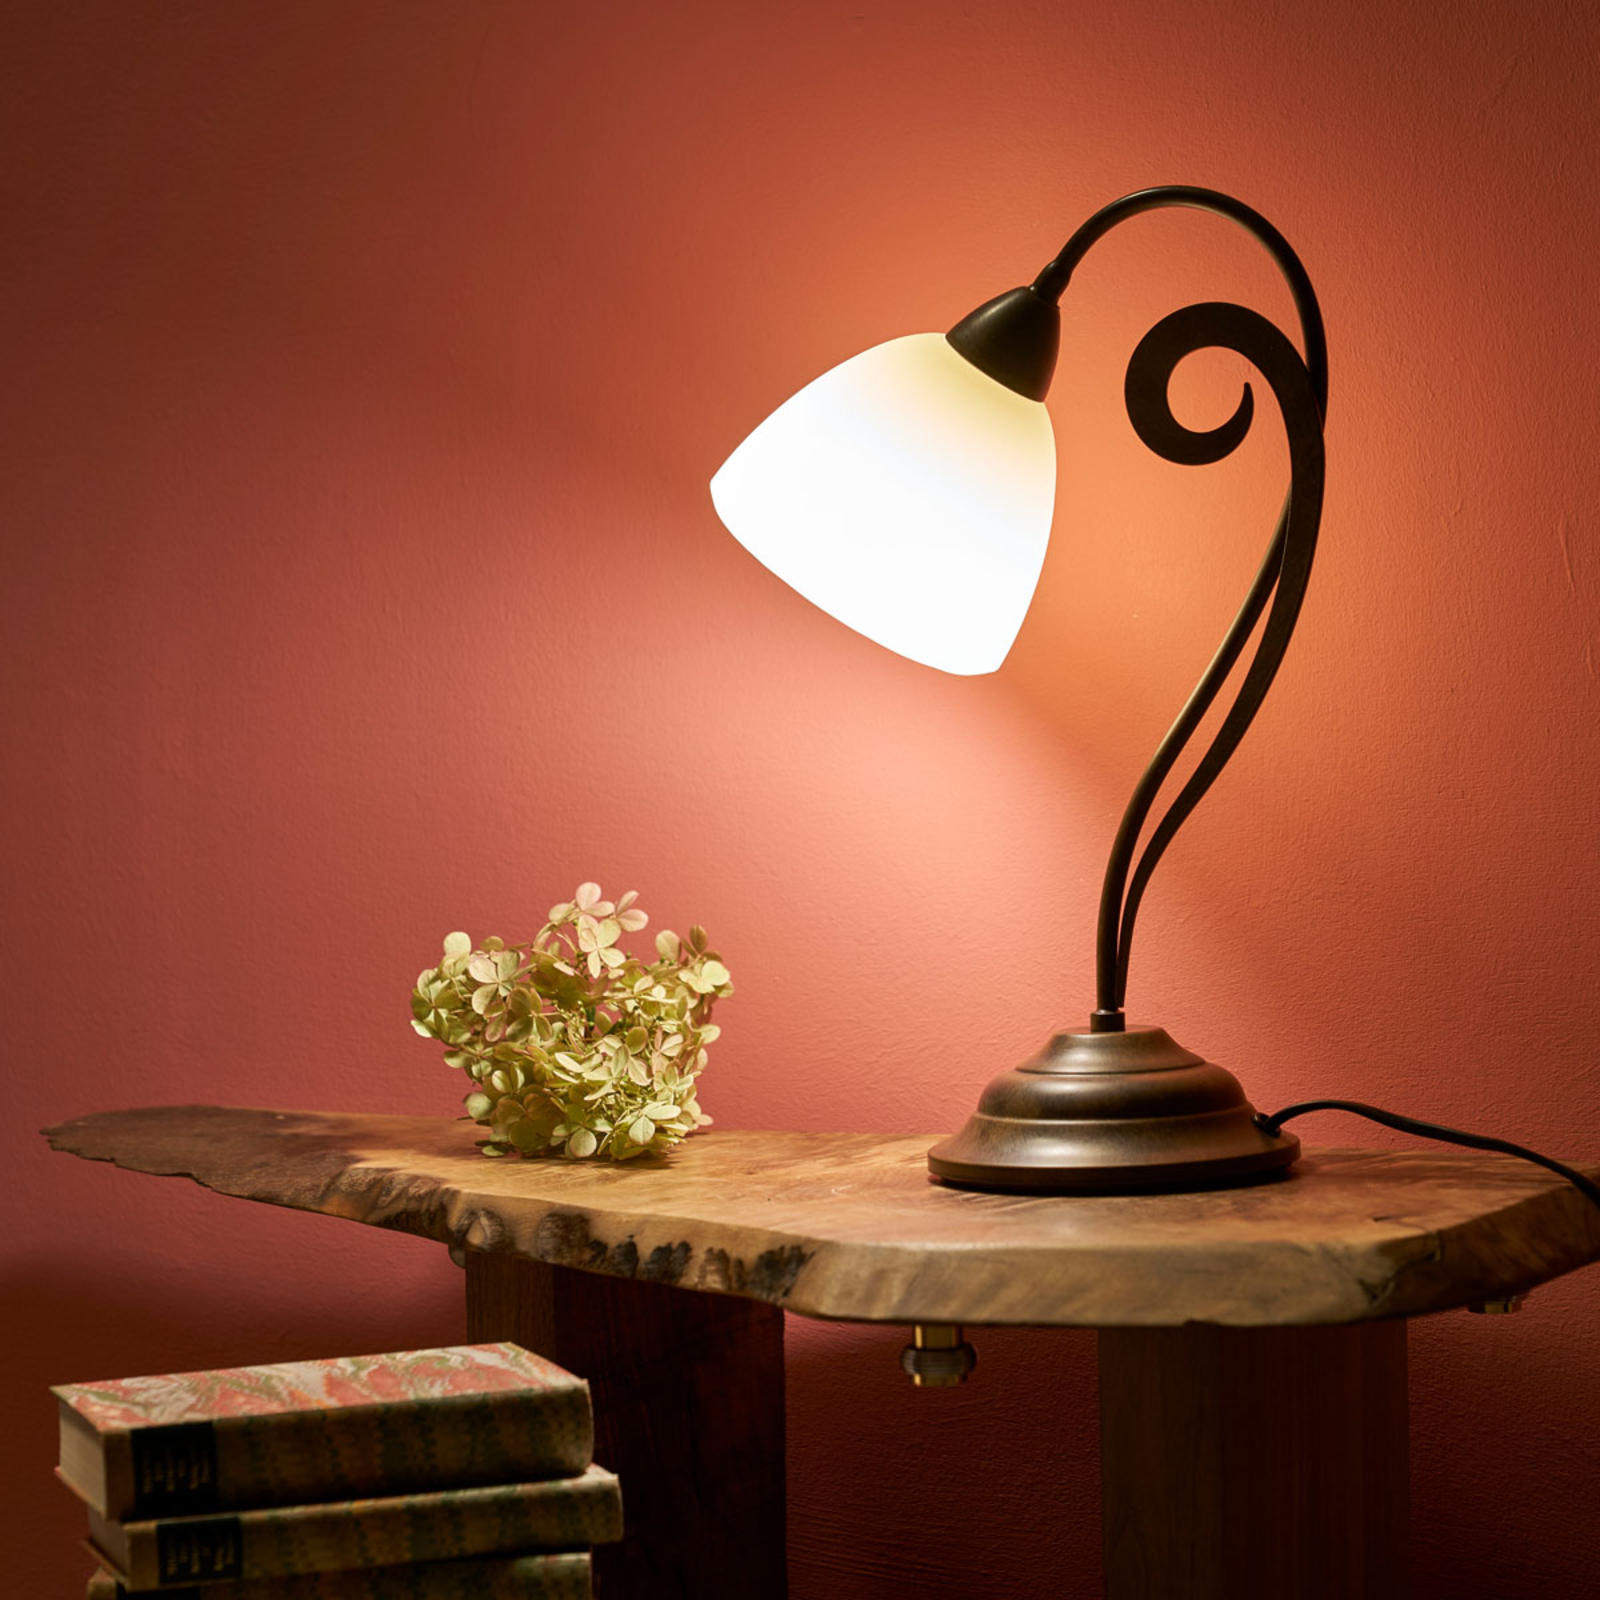 Luca - velformet bordlampe i landlig stil